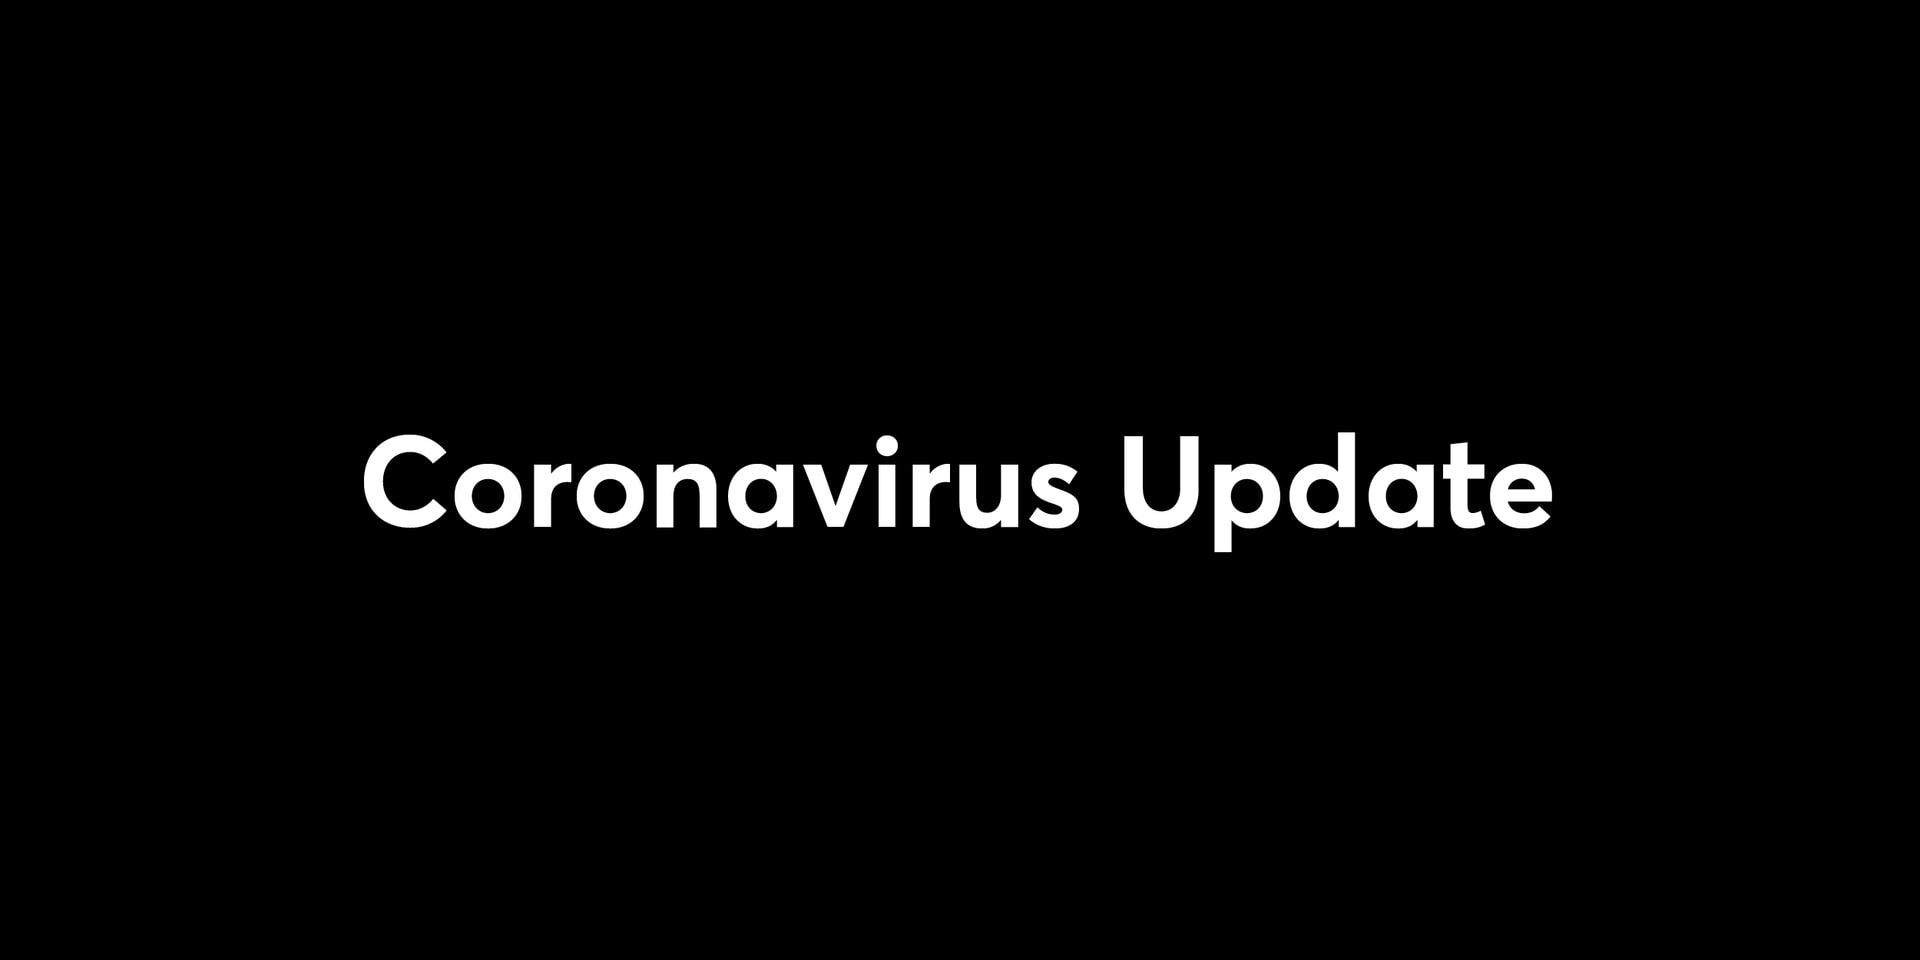 Template titled "Coronavirus Update".